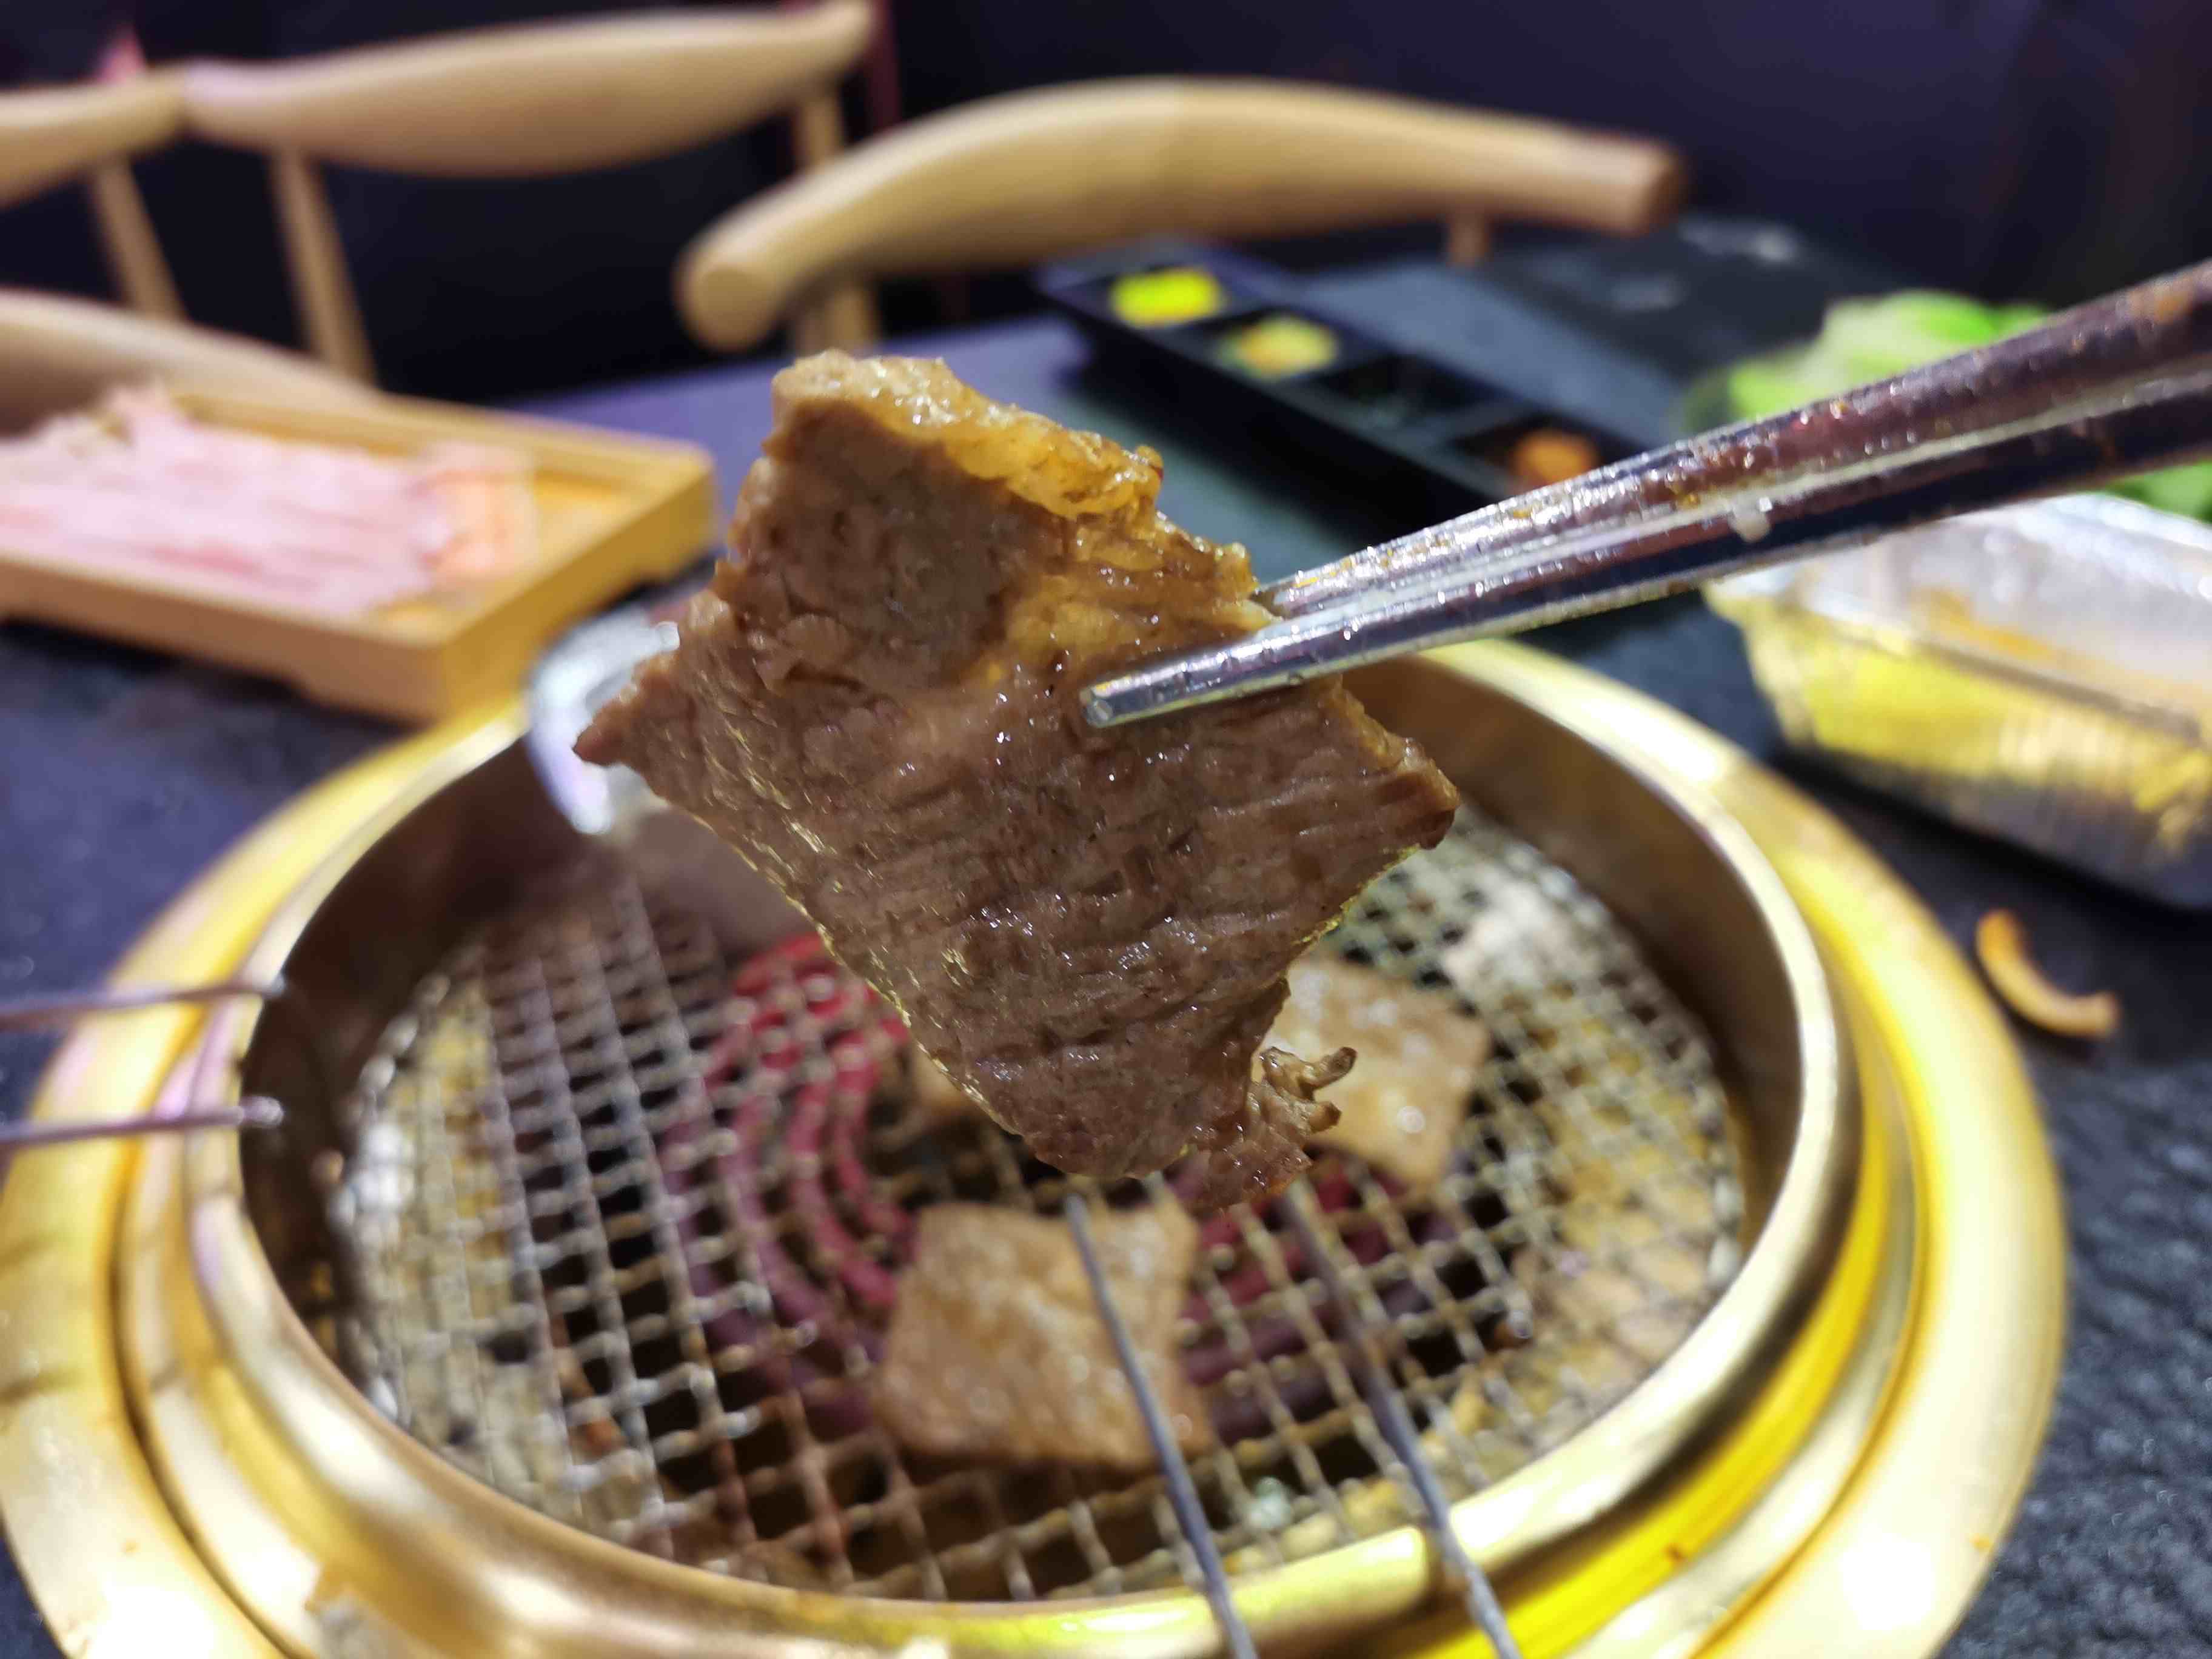 广州烤肉自助餐|广州这家店的自助烤肉118元一位